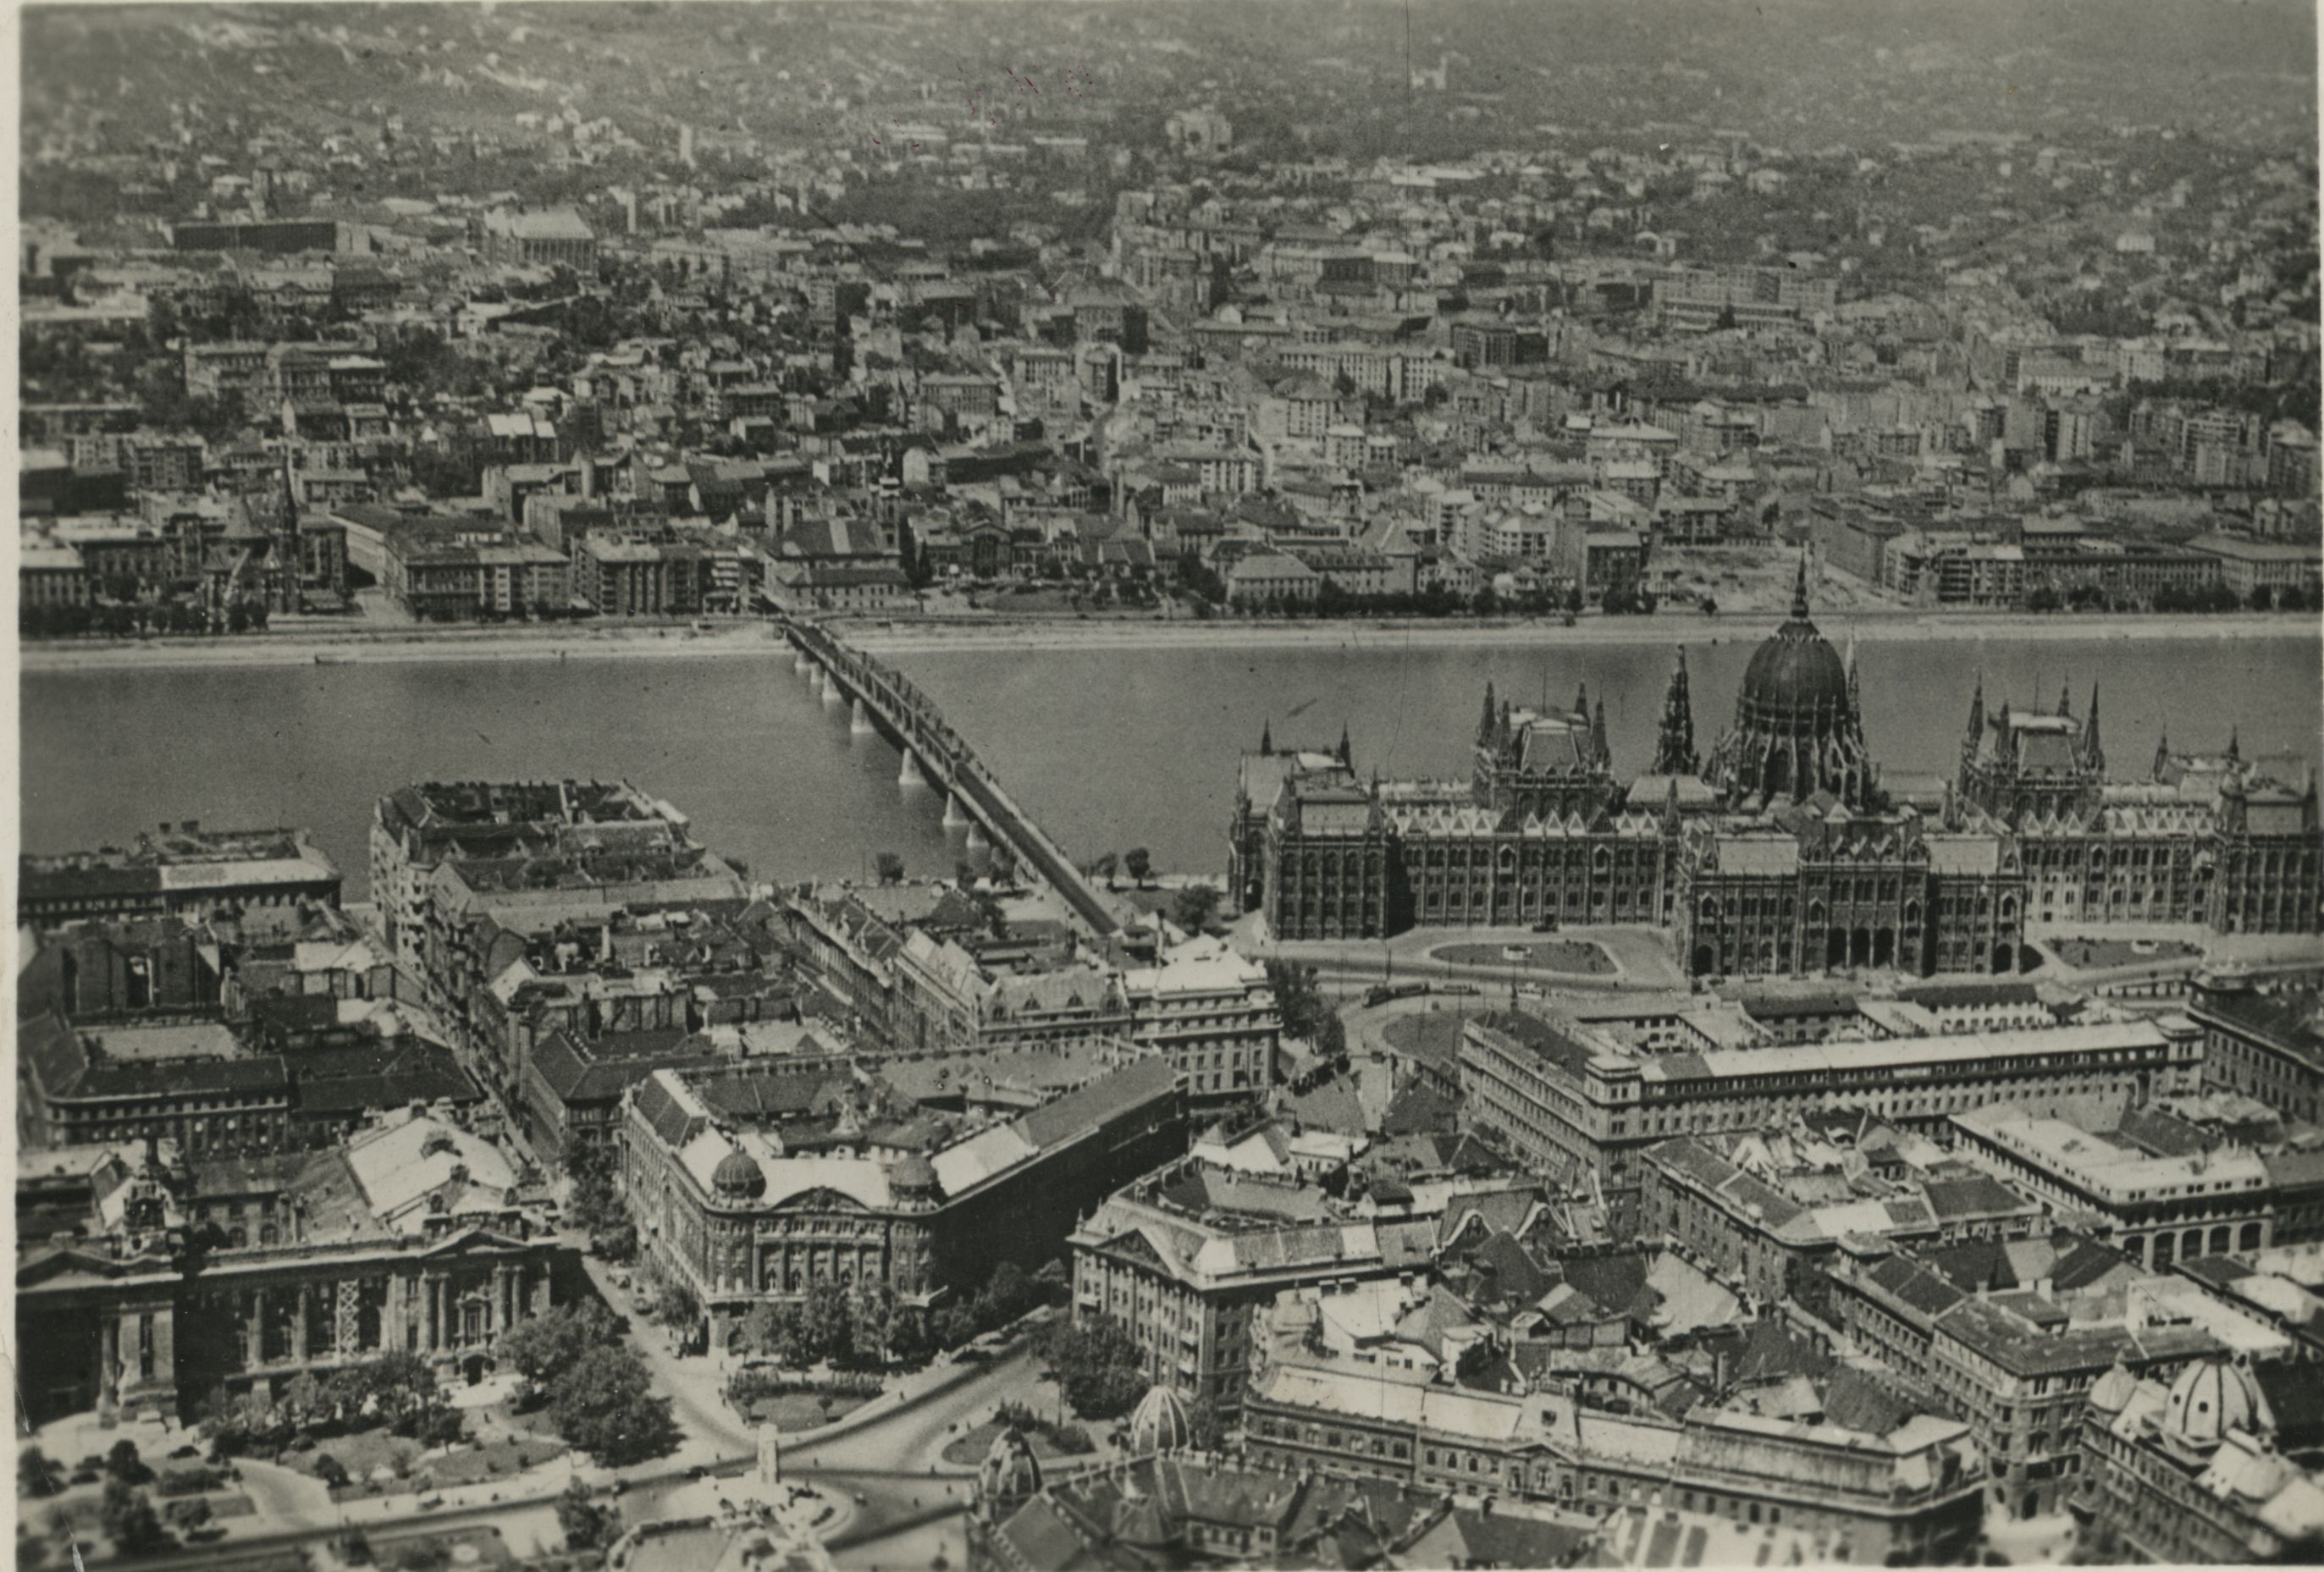 A város látképe Pest felől. A Kossuth híd a Parlament mellett ível át a Dunán. Képeslap, 1950 körül (BFL XV.243.a.180)